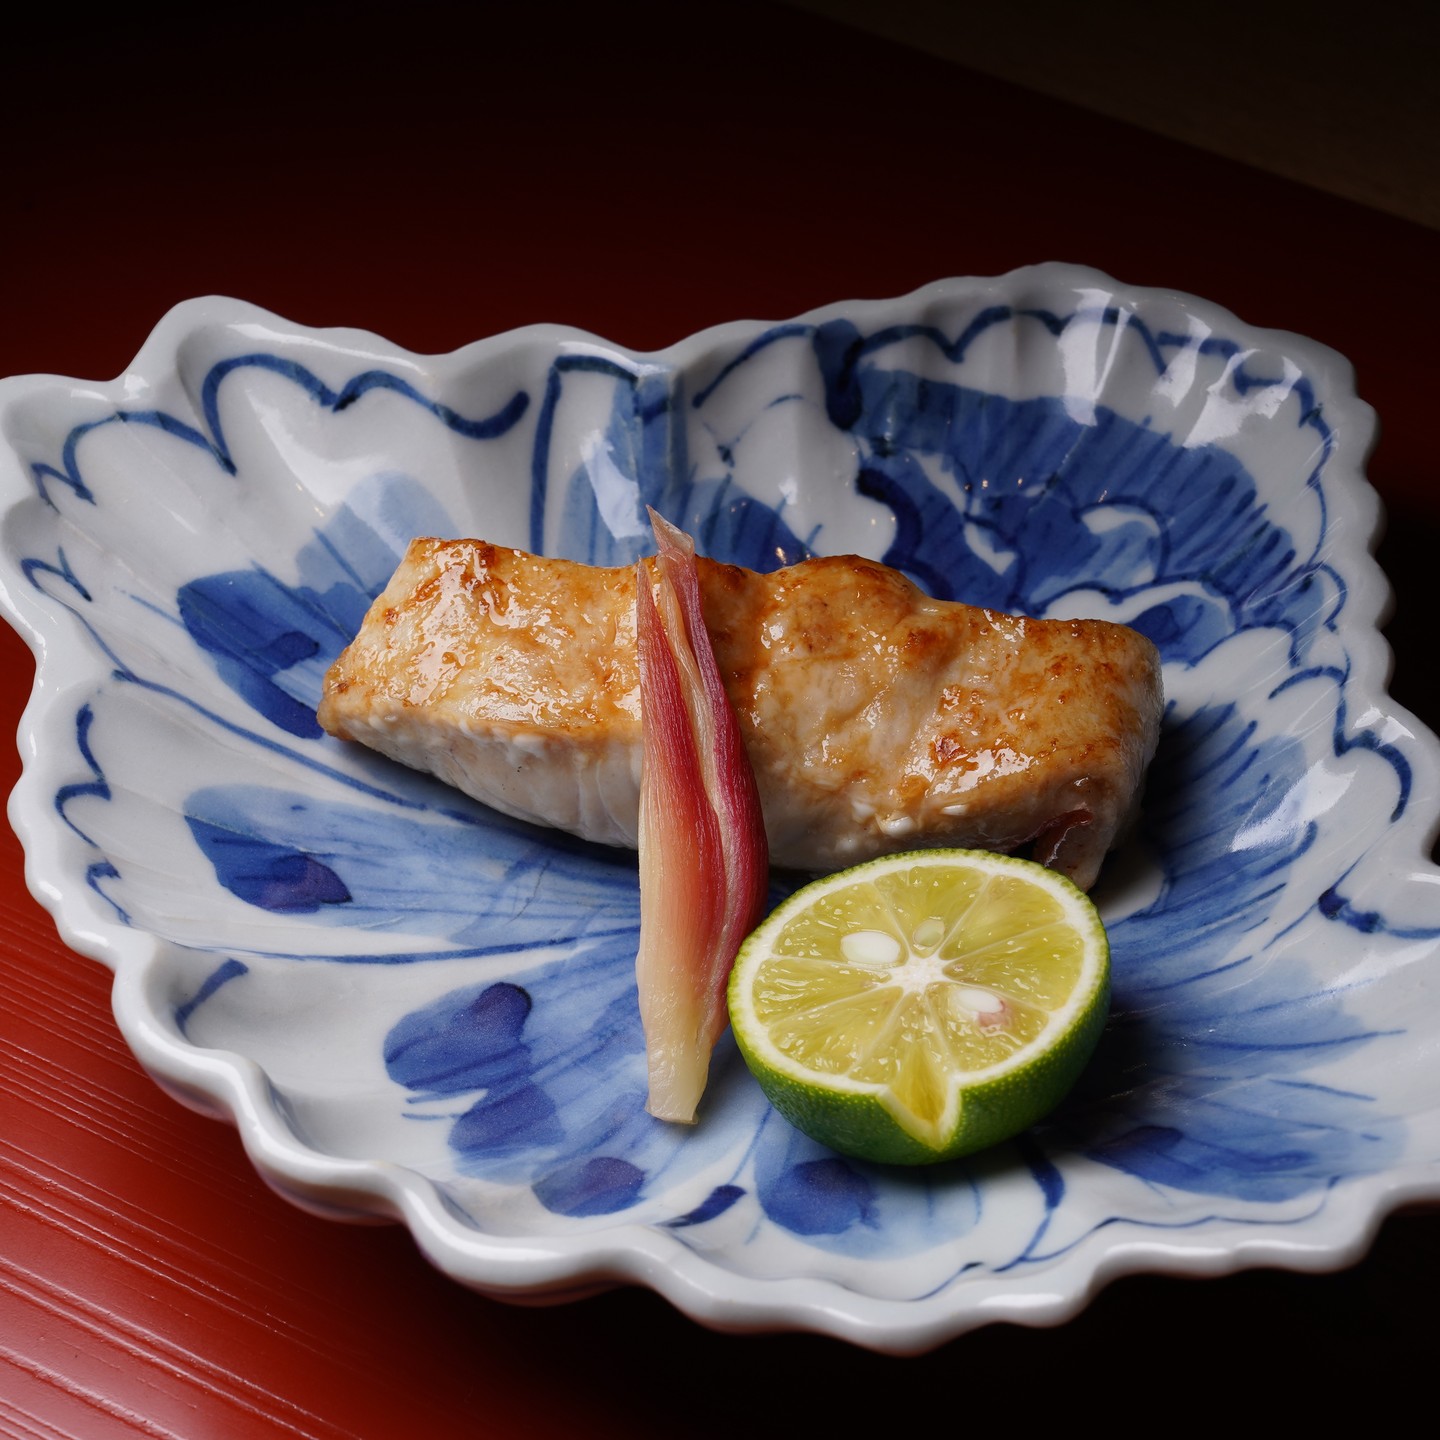 金目鯛の付け焼き。銚子のすごく太った金目鯛の付け焼きです。手前に酢橘と茗荷の甘酢漬けをあしらっております。今の時期たたき木の芽をかけますが、撮影用というのもあり、今回はナシです。やはり炭で焼いた新鮮な魚は最高においしです。#日本料理#おまかせ#予約制#和食#会席・懐石#東京#美味しい酒#美味しい日本酒#美味しい焼酎#美味しい白ワイン#美味しいビール#美味しいウイスキー#特別ディナー#鮮魚#英語メニュー#豊洲市場#森下駅　#清澄白河駅#都営新宿線#大江戸線#半蔵門線#コロナ対策#English#English menu. #English Speaker